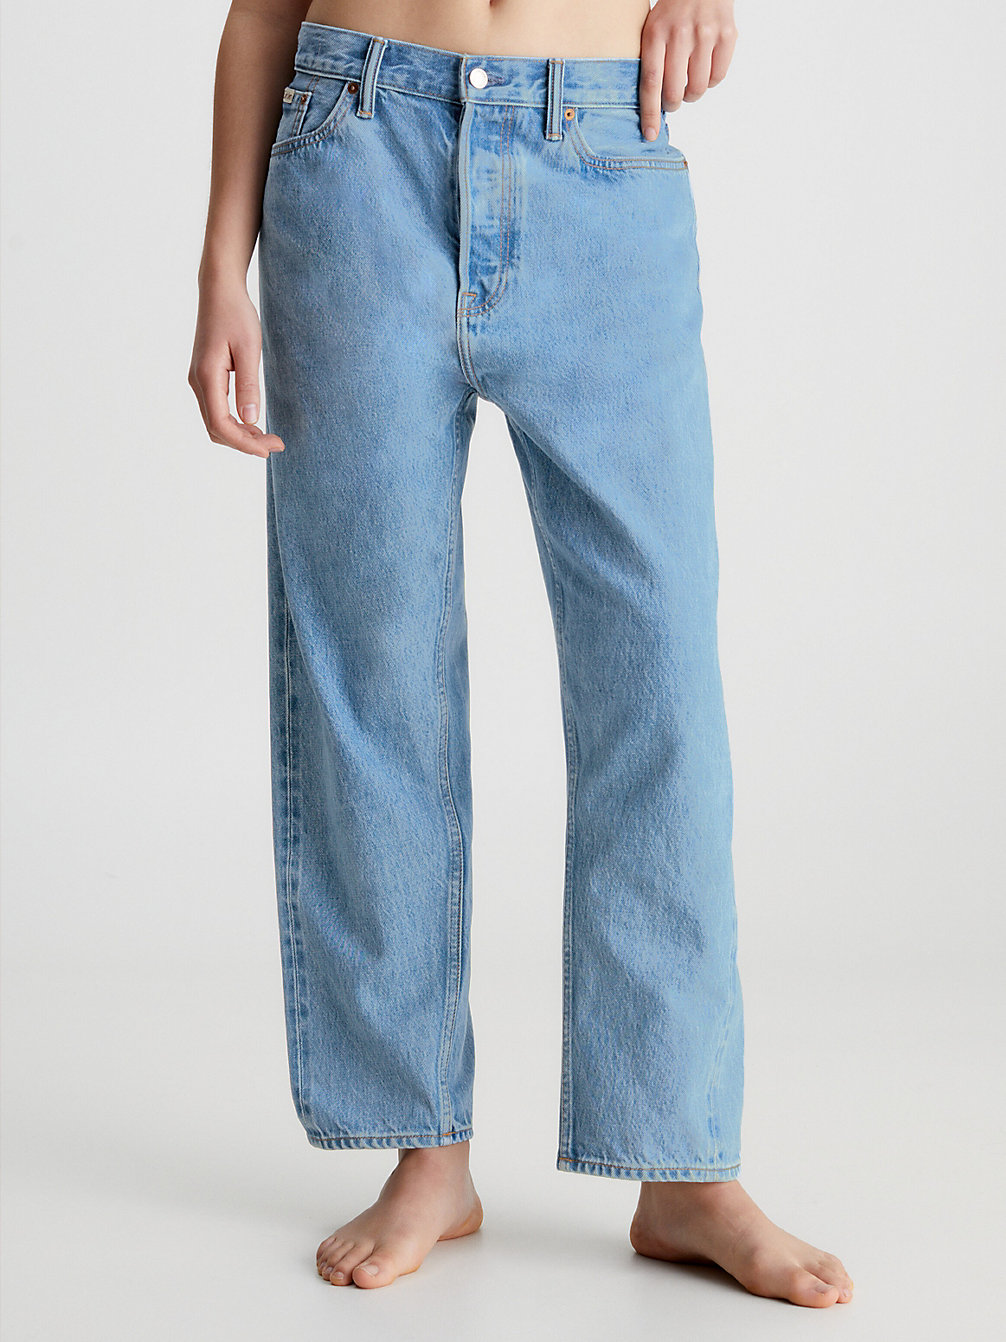 COASTAL BLUE Unisex Relaxed Jeans – CK Standards undefined Herren Calvin Klein